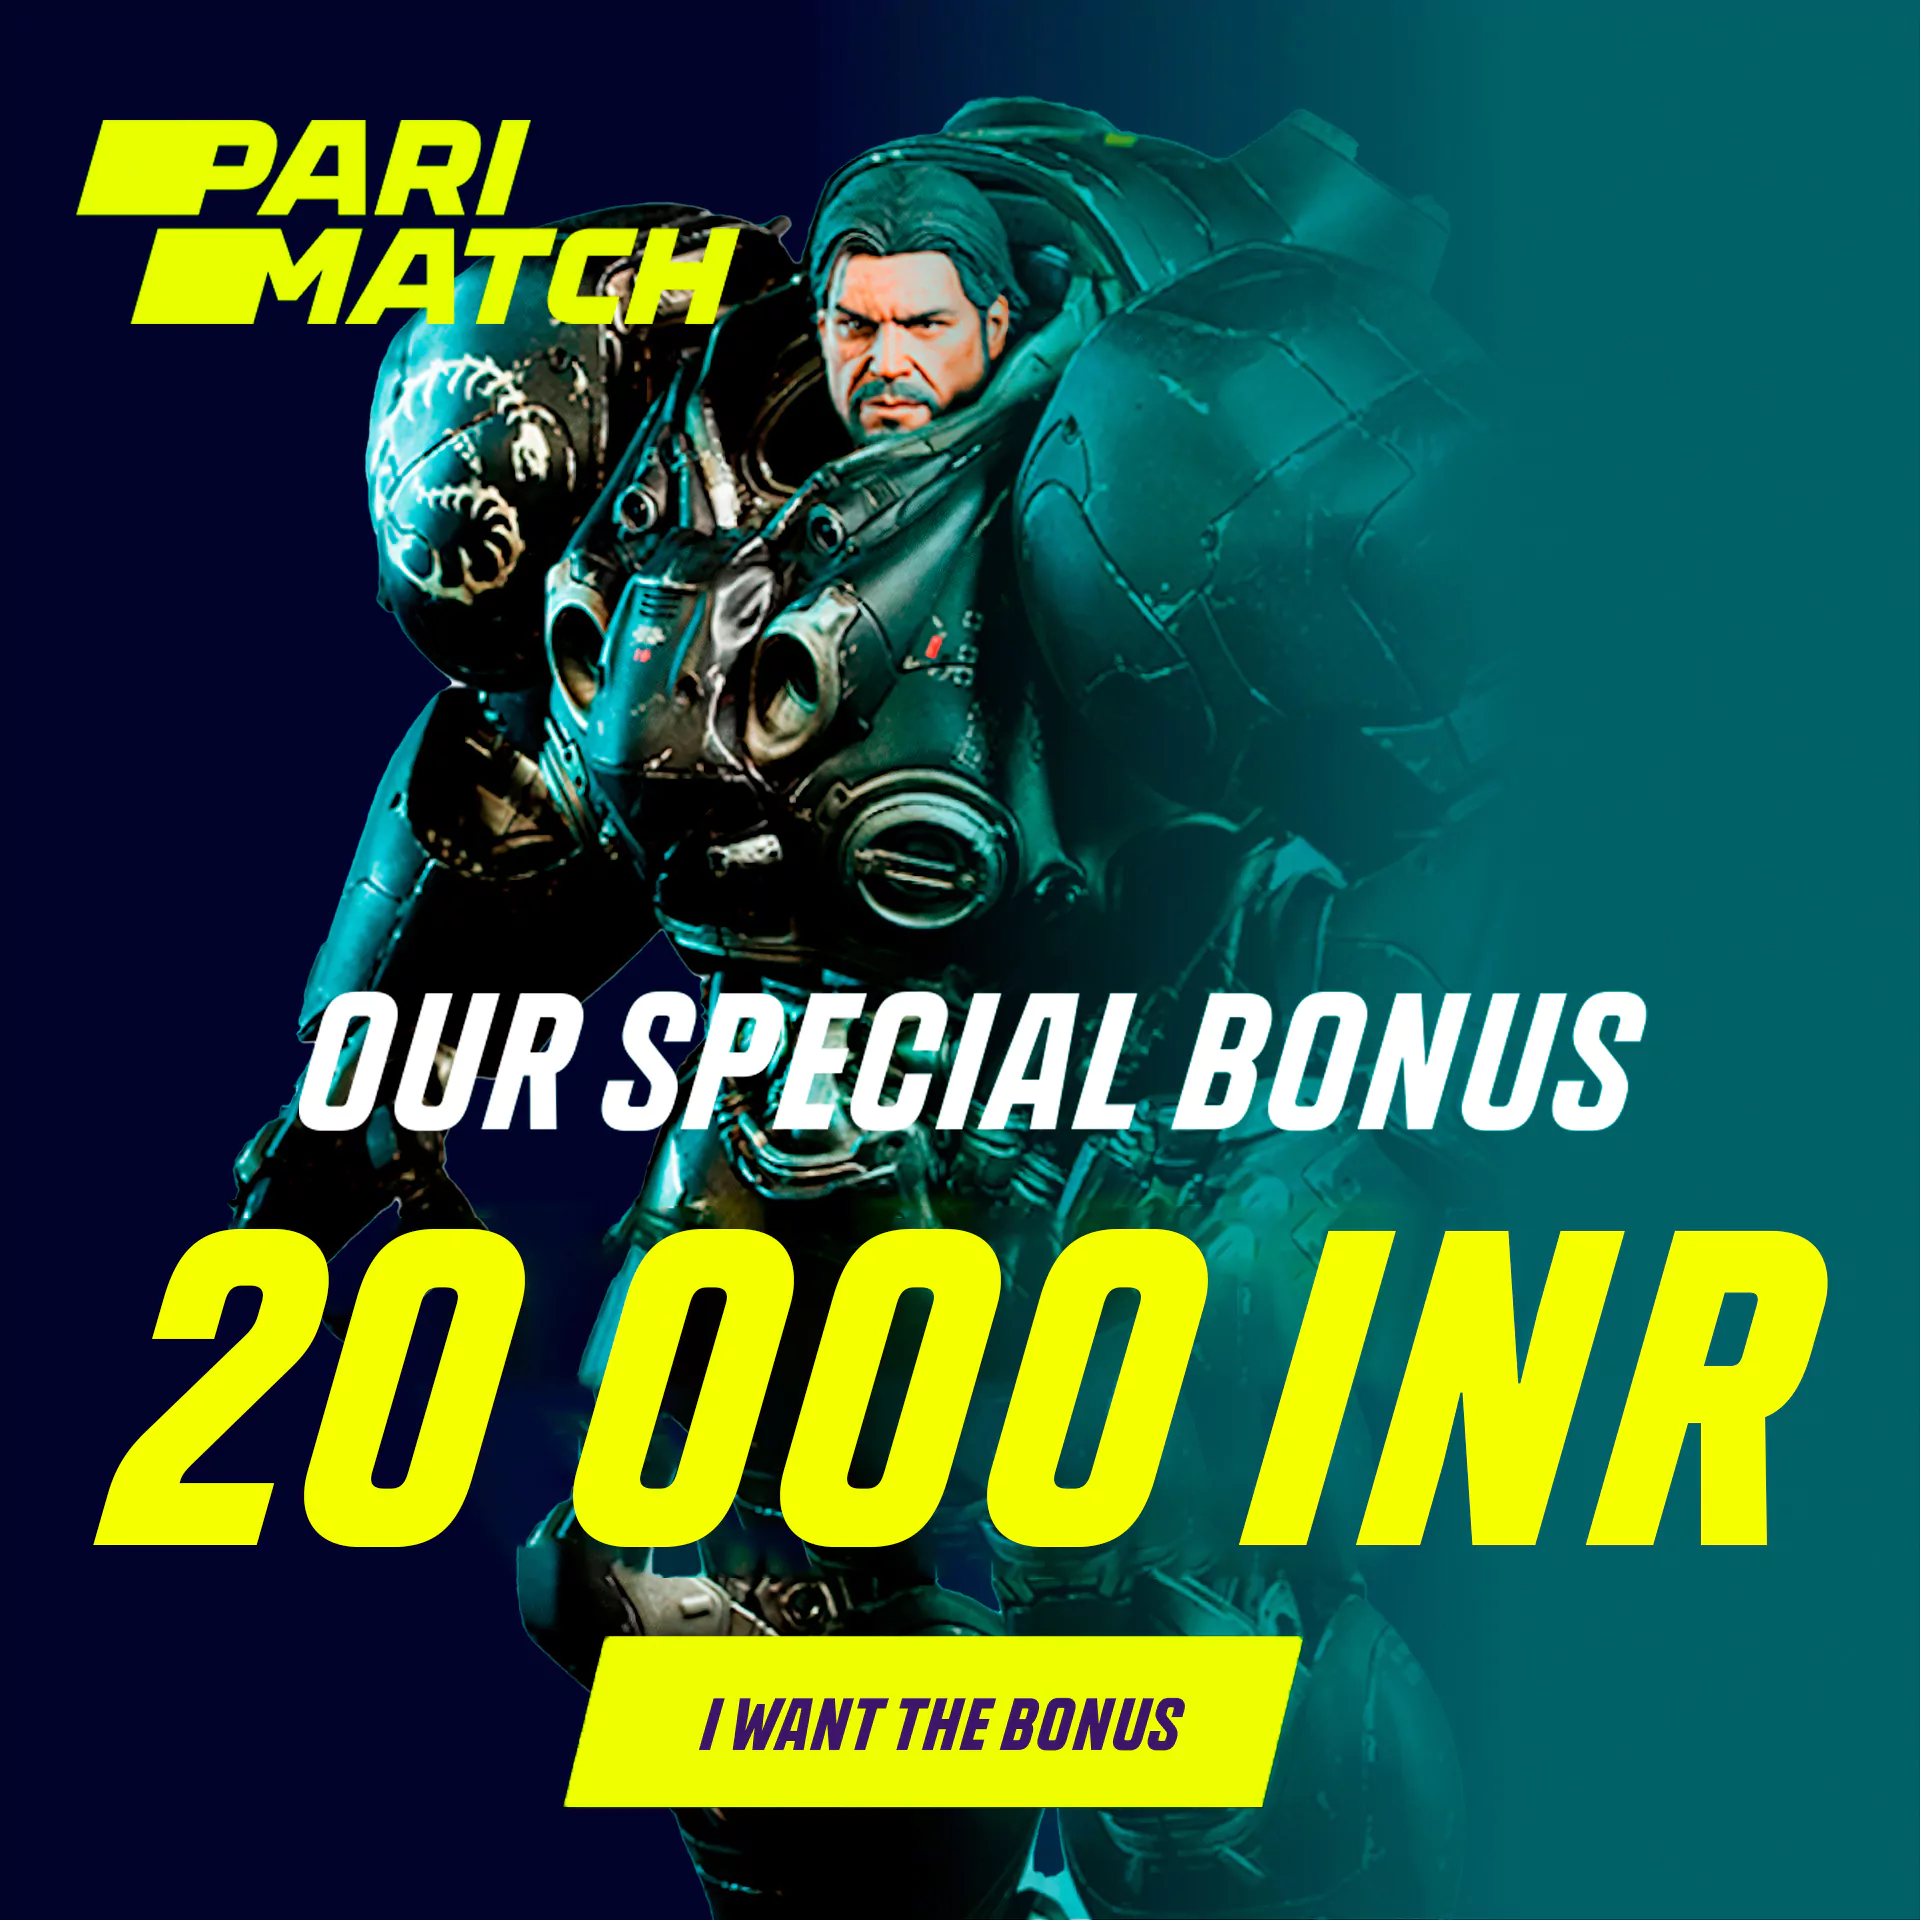 स्टारक्राफ्ट 2 पर दांव लगाना शुरू करें और 20,000 रुपये का बोनस प्राप्त करें ।